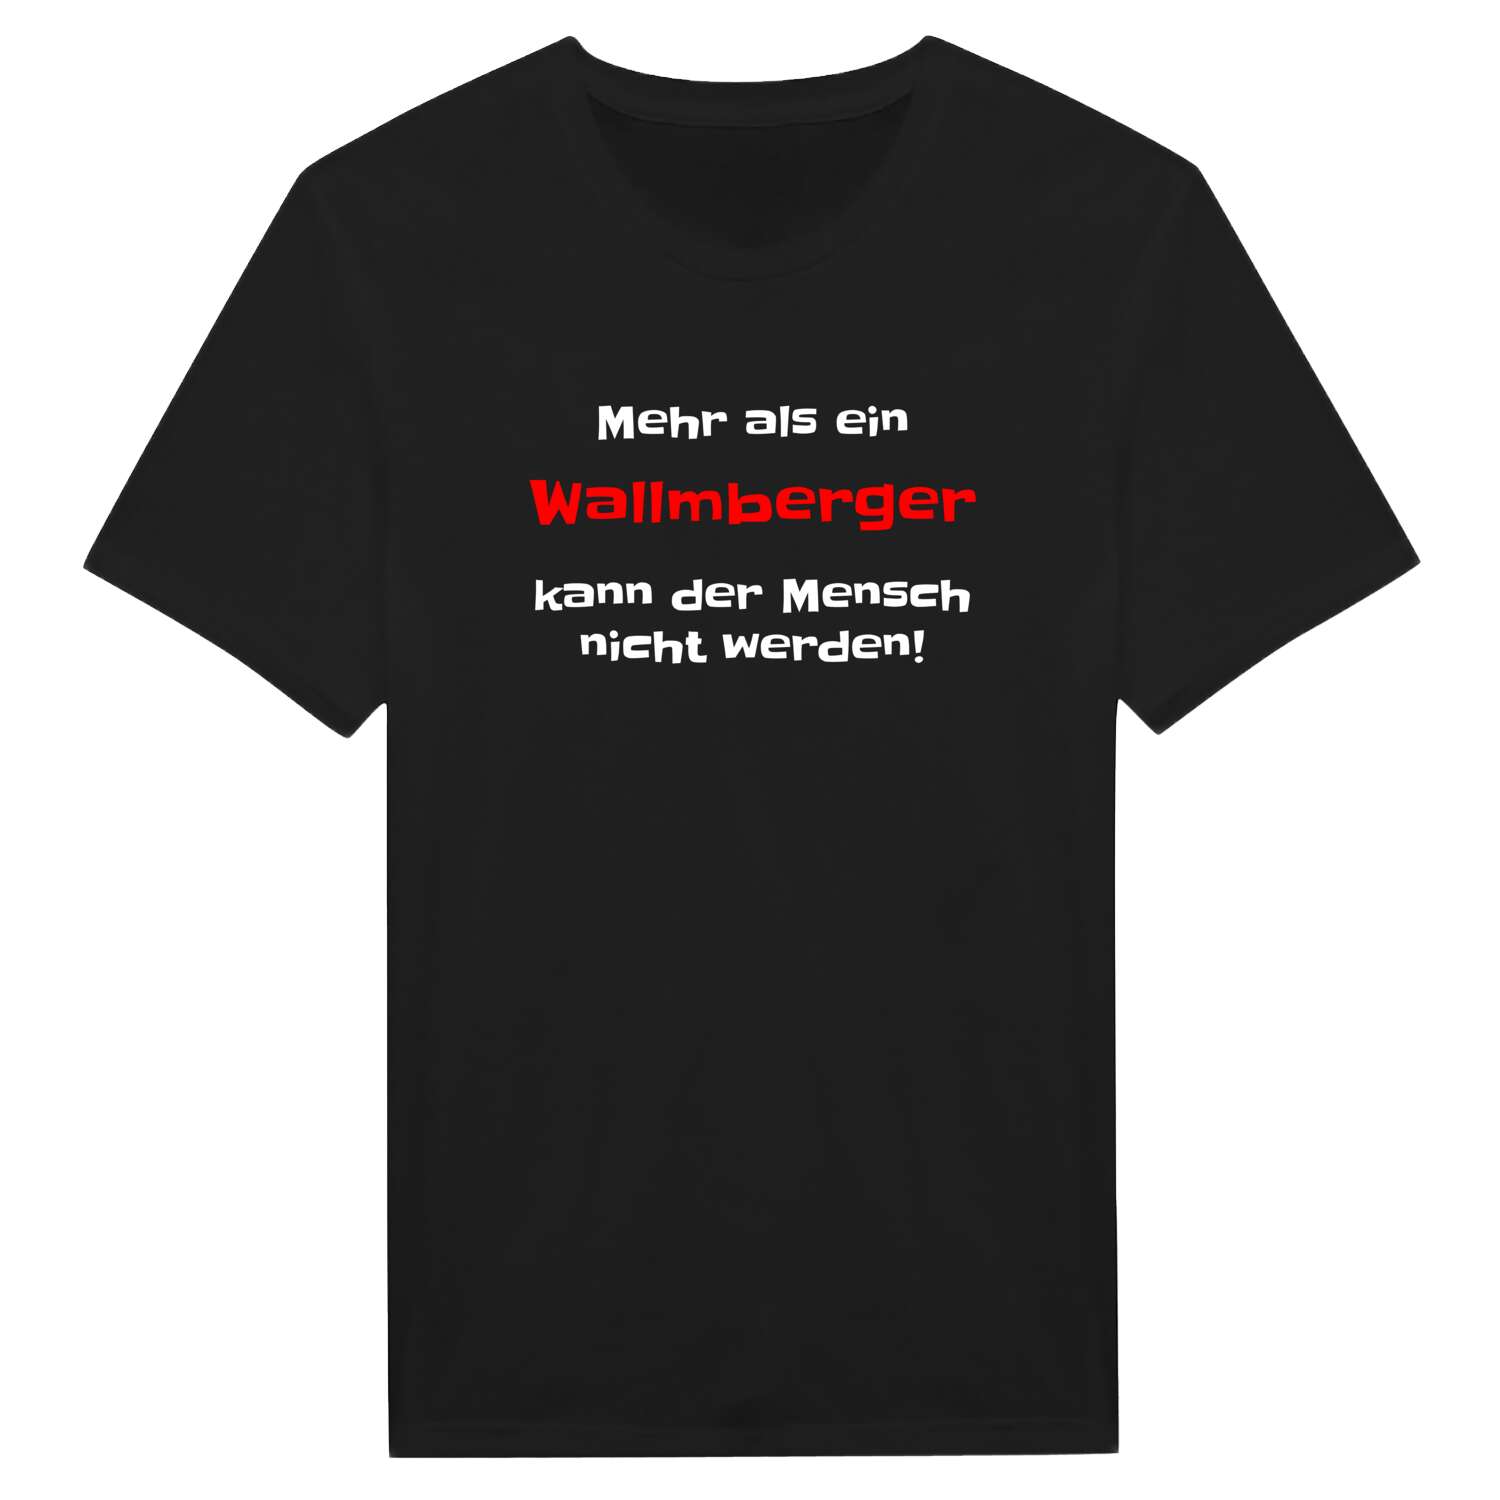 Wallmberg T-Shirt »Mehr als ein«